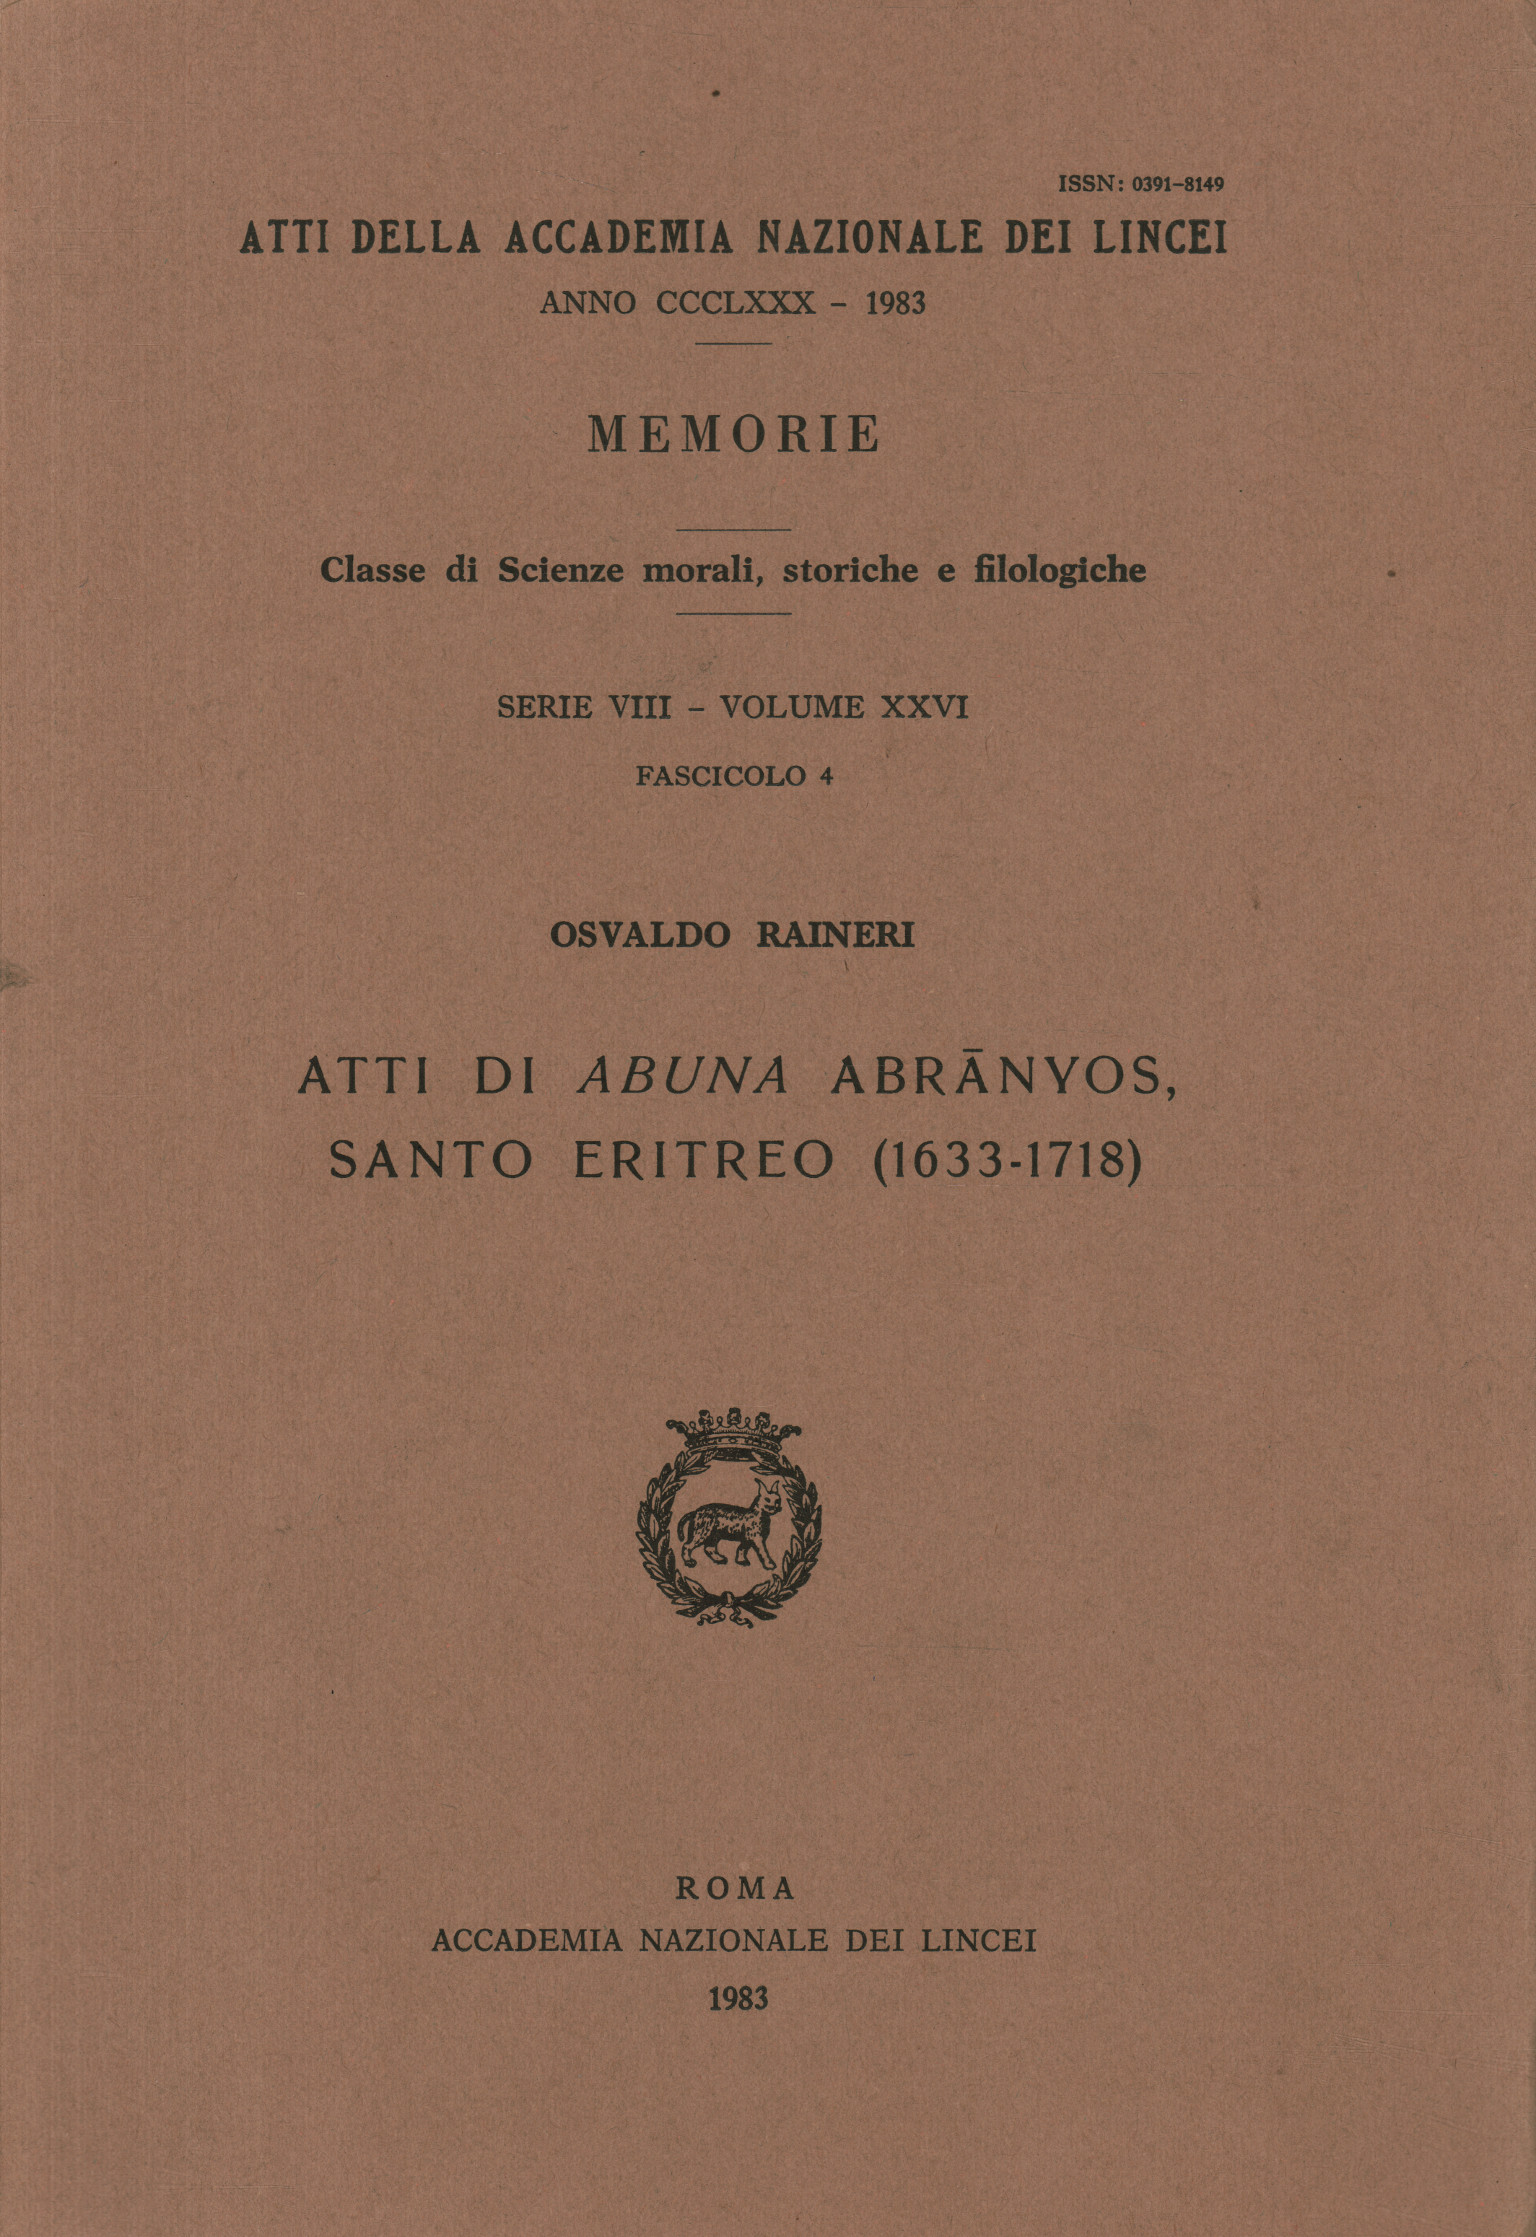 Akten des eritreischen Heiligen Abuna Abrānyos, Akten des eritreischen Heiligen Abuna Abrānyos